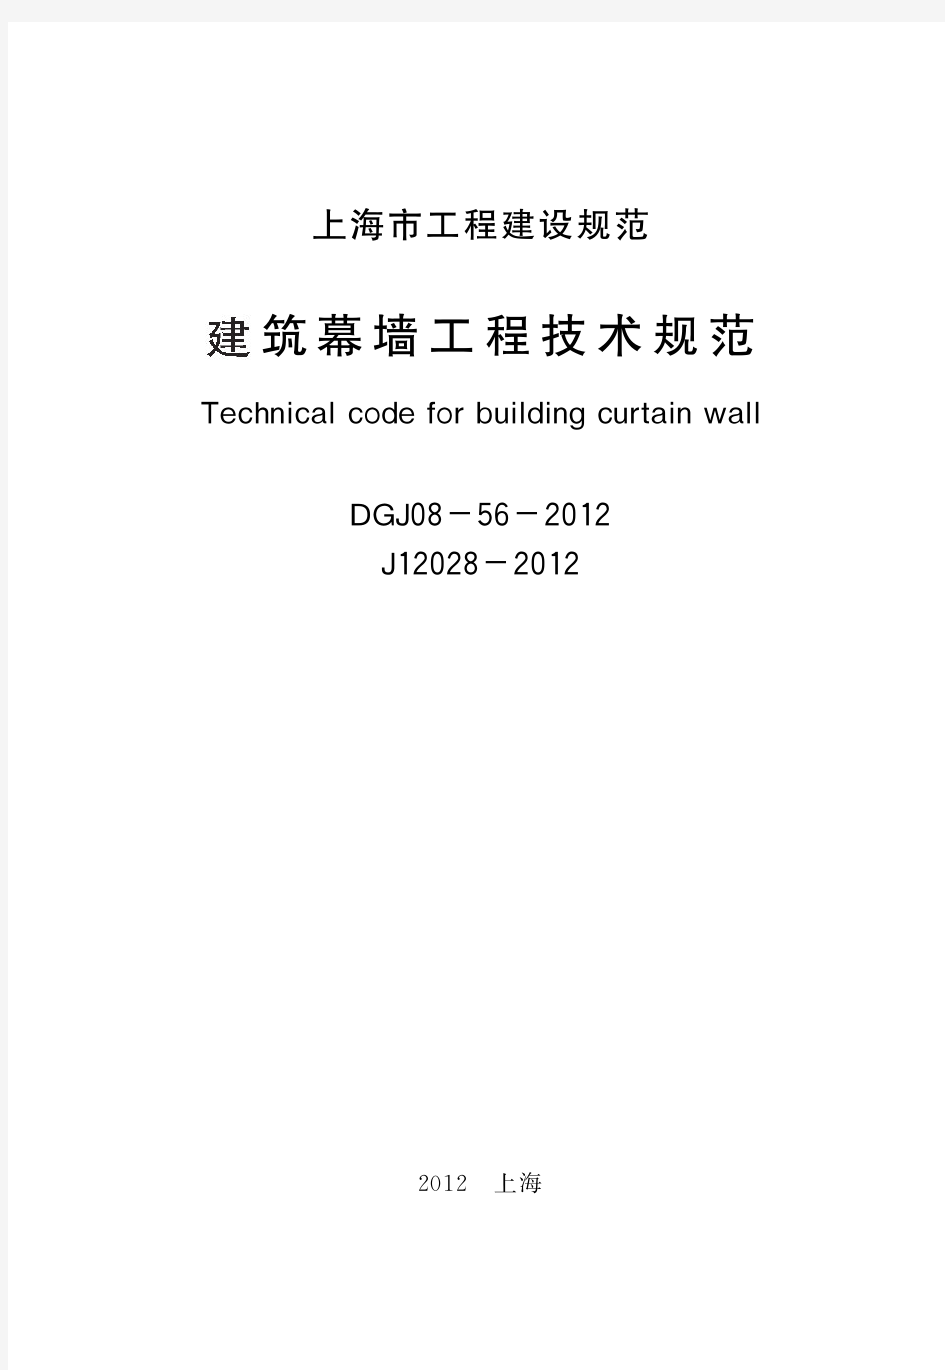 上海市建筑幕墙工程技术规范DGJ08-56-2012